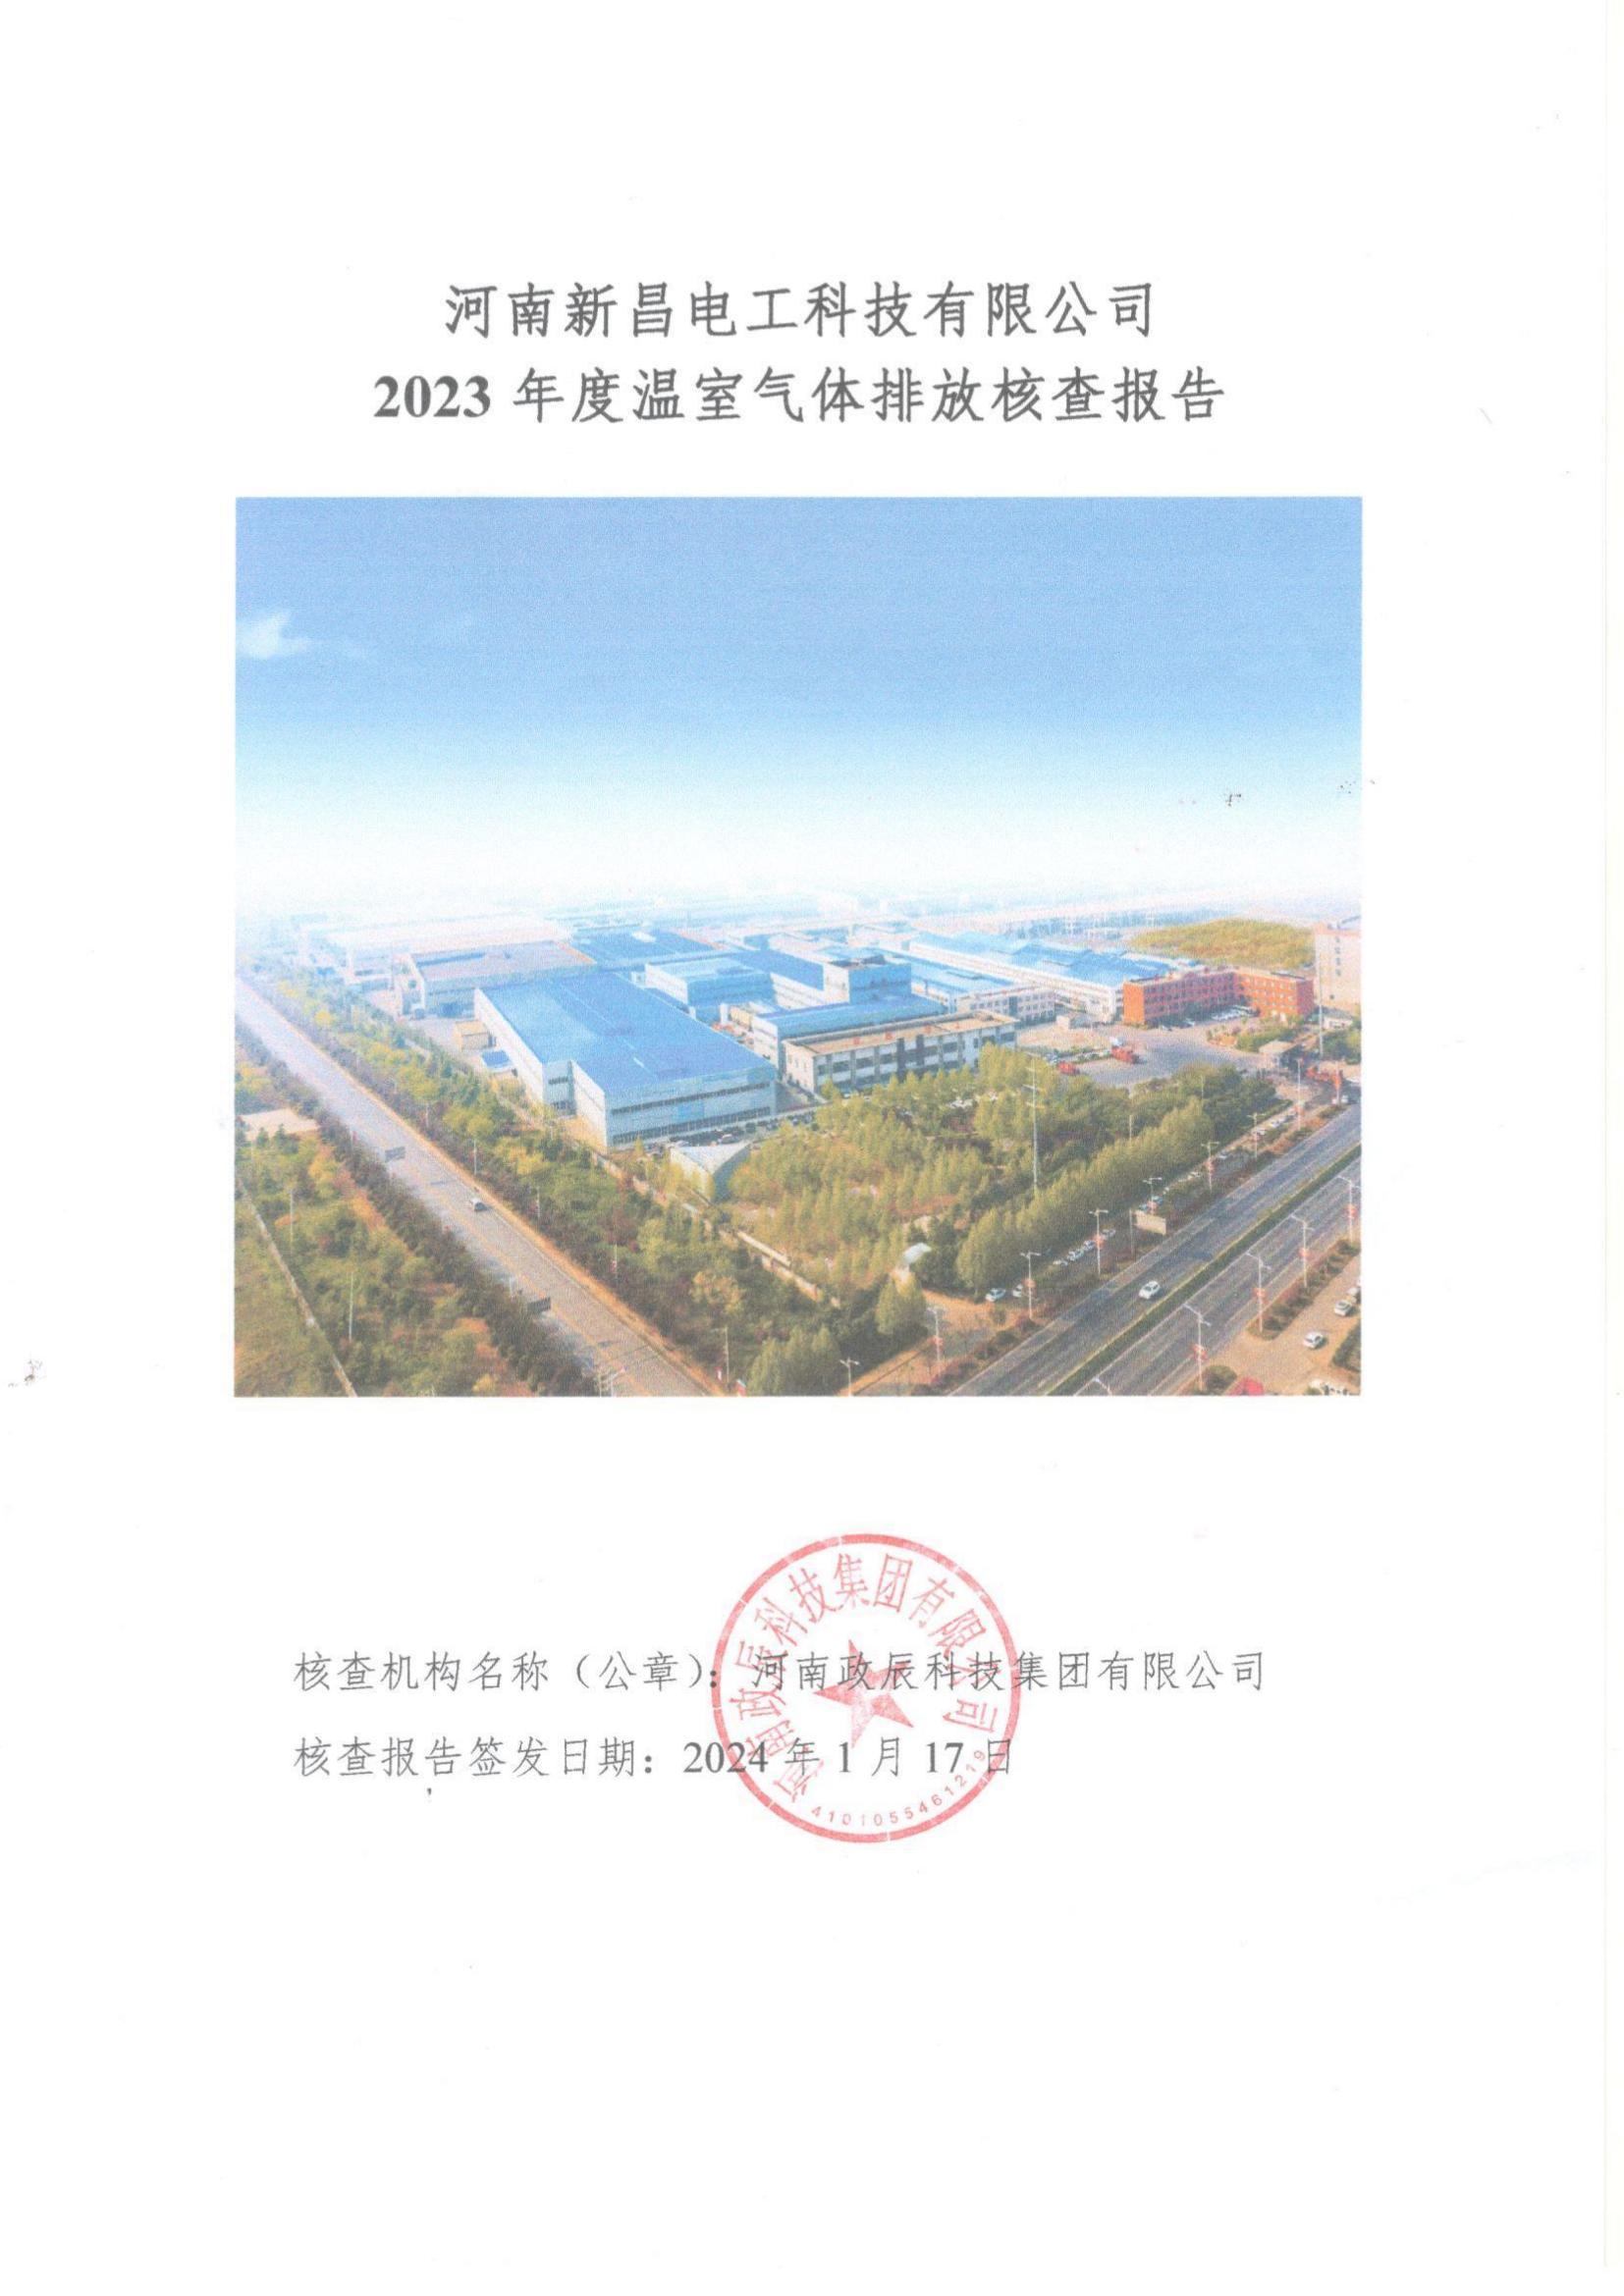 河南利来·国际电工科技有限公司2023年温室气体排放核查报告